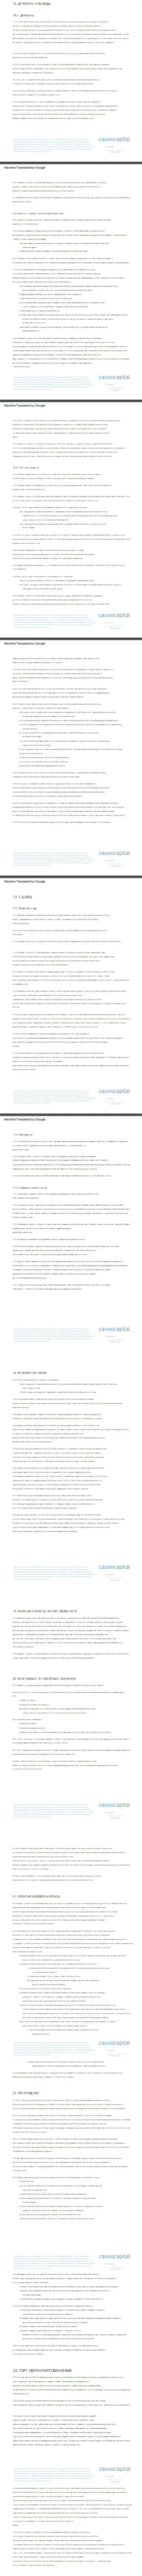 3 часть клиентского соглашения форекс-брокера CauvoCapital